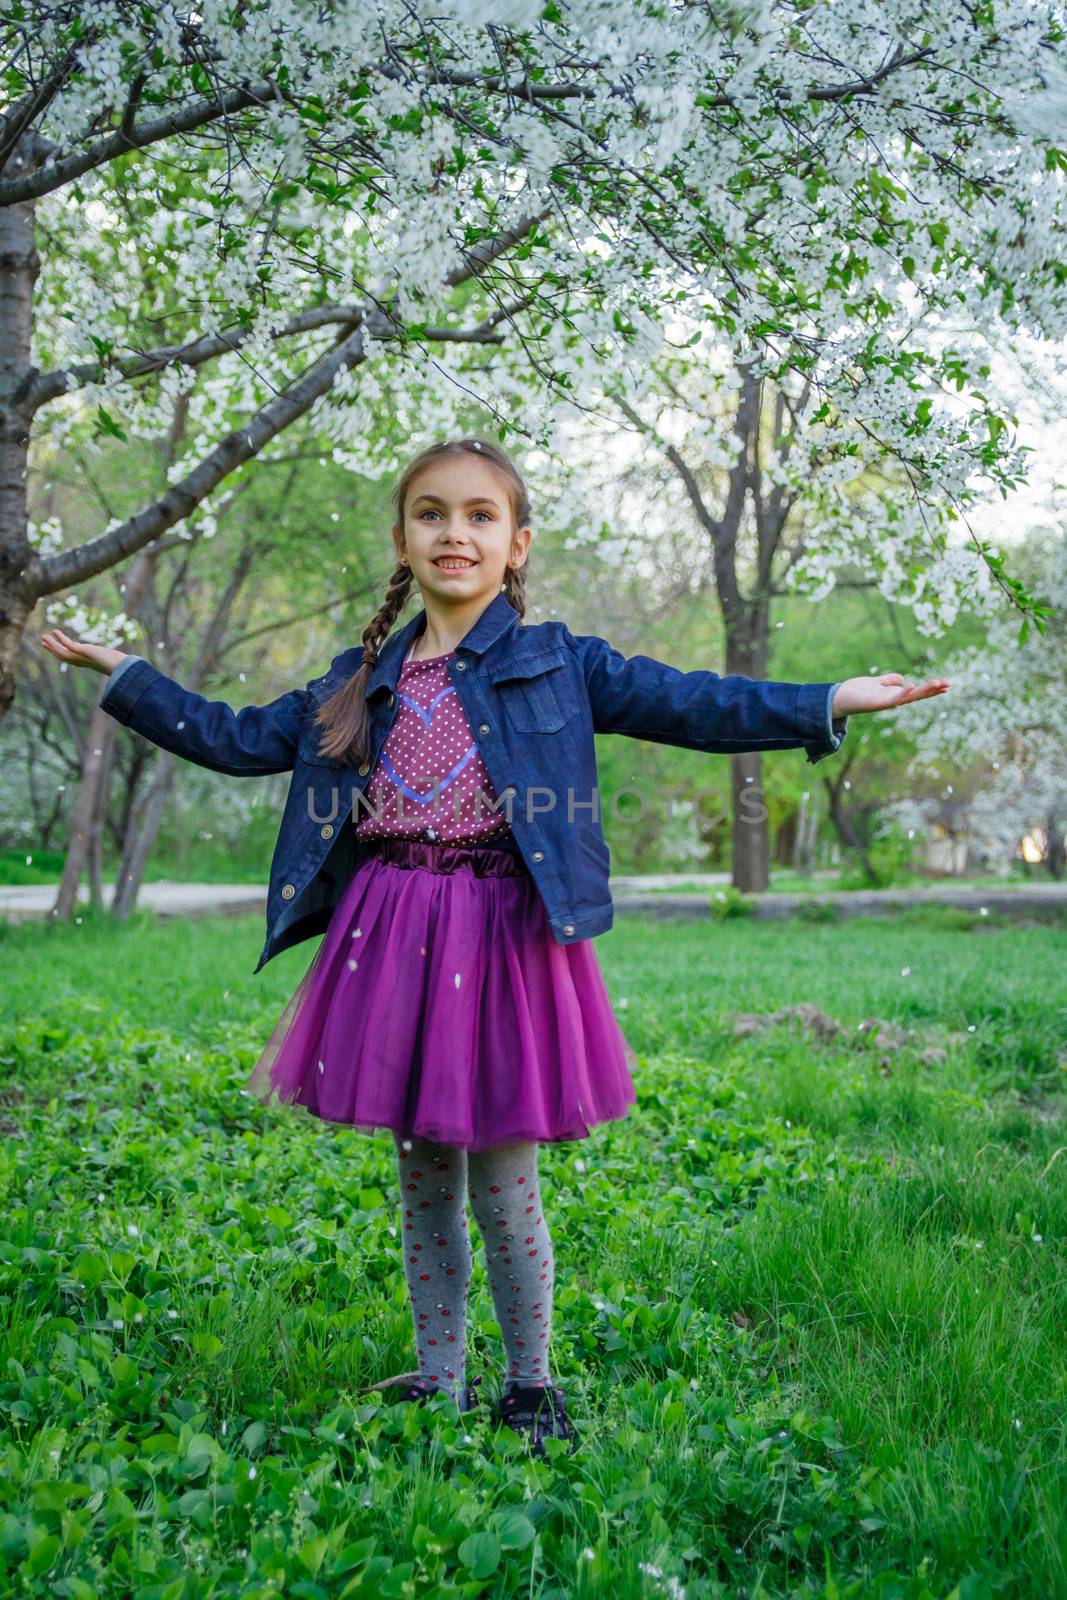 Smiling girl enjoying falling petals among spring garden